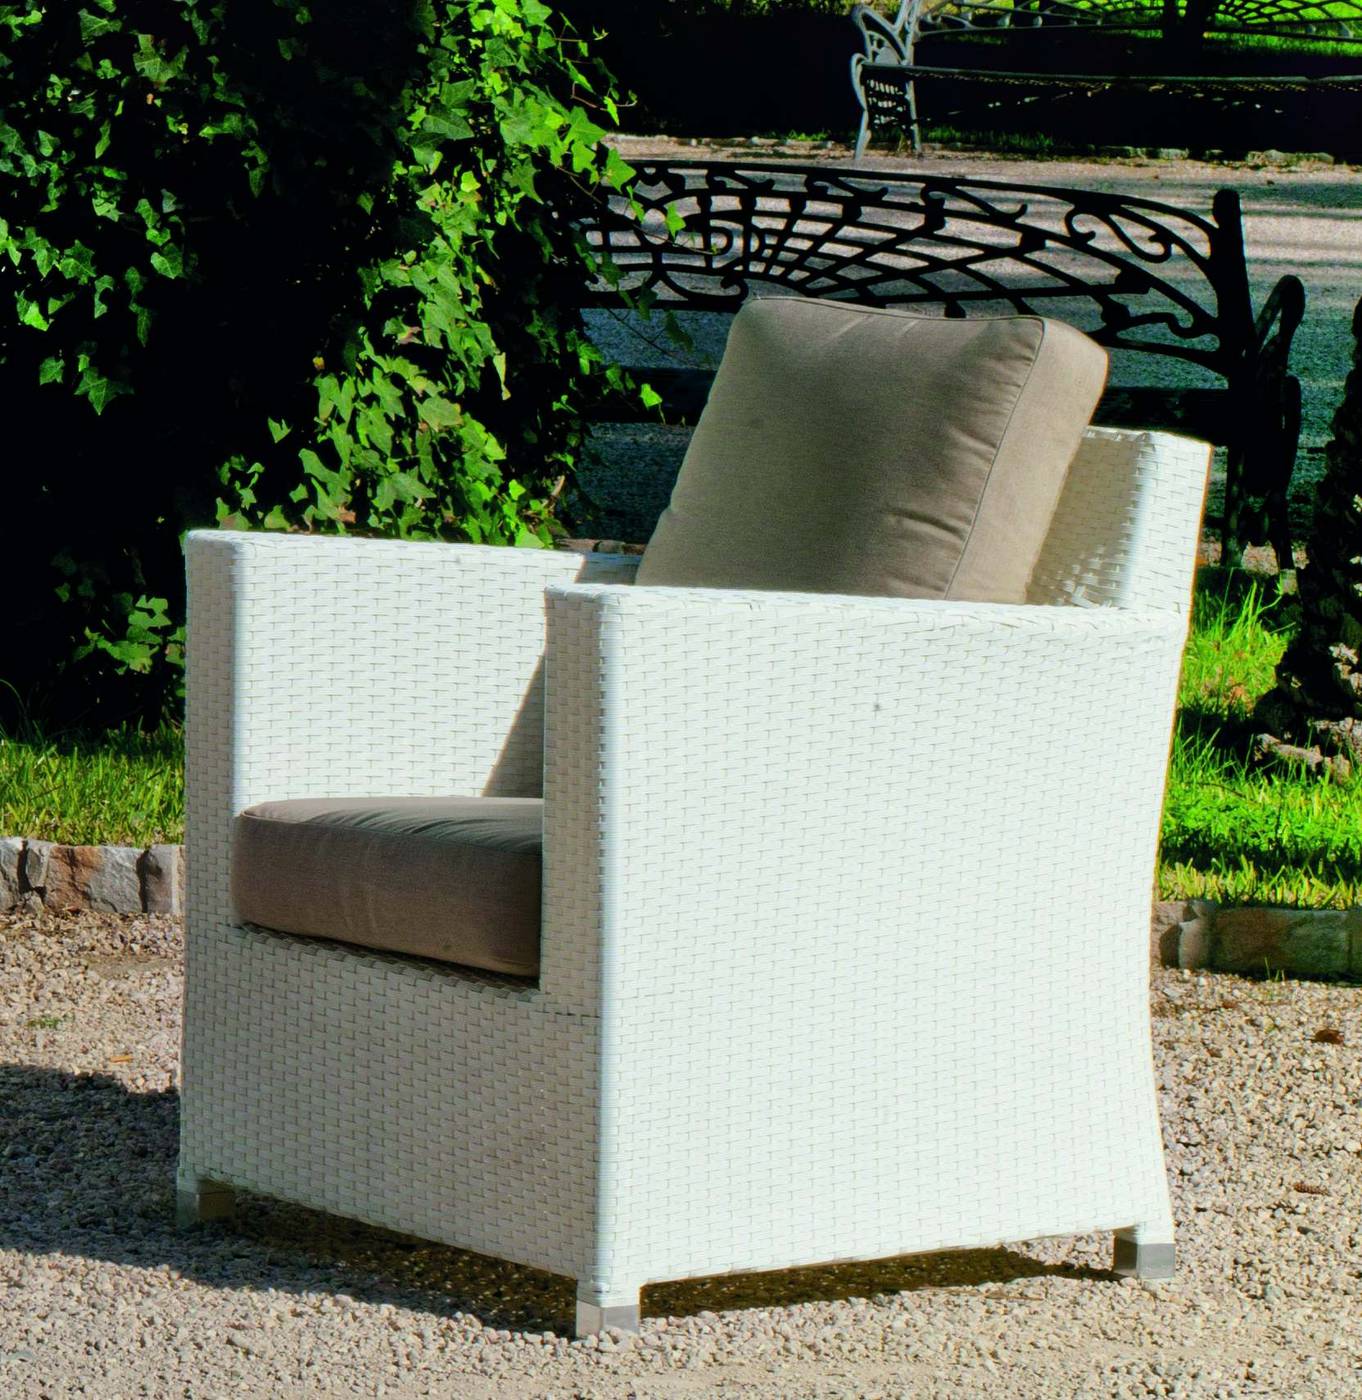 Conjunto Ratán Sint. Yansi-8 - Conjunto de ratán sintético color blanco: sofá 3 plazas + 2 sillones + mesa de centro